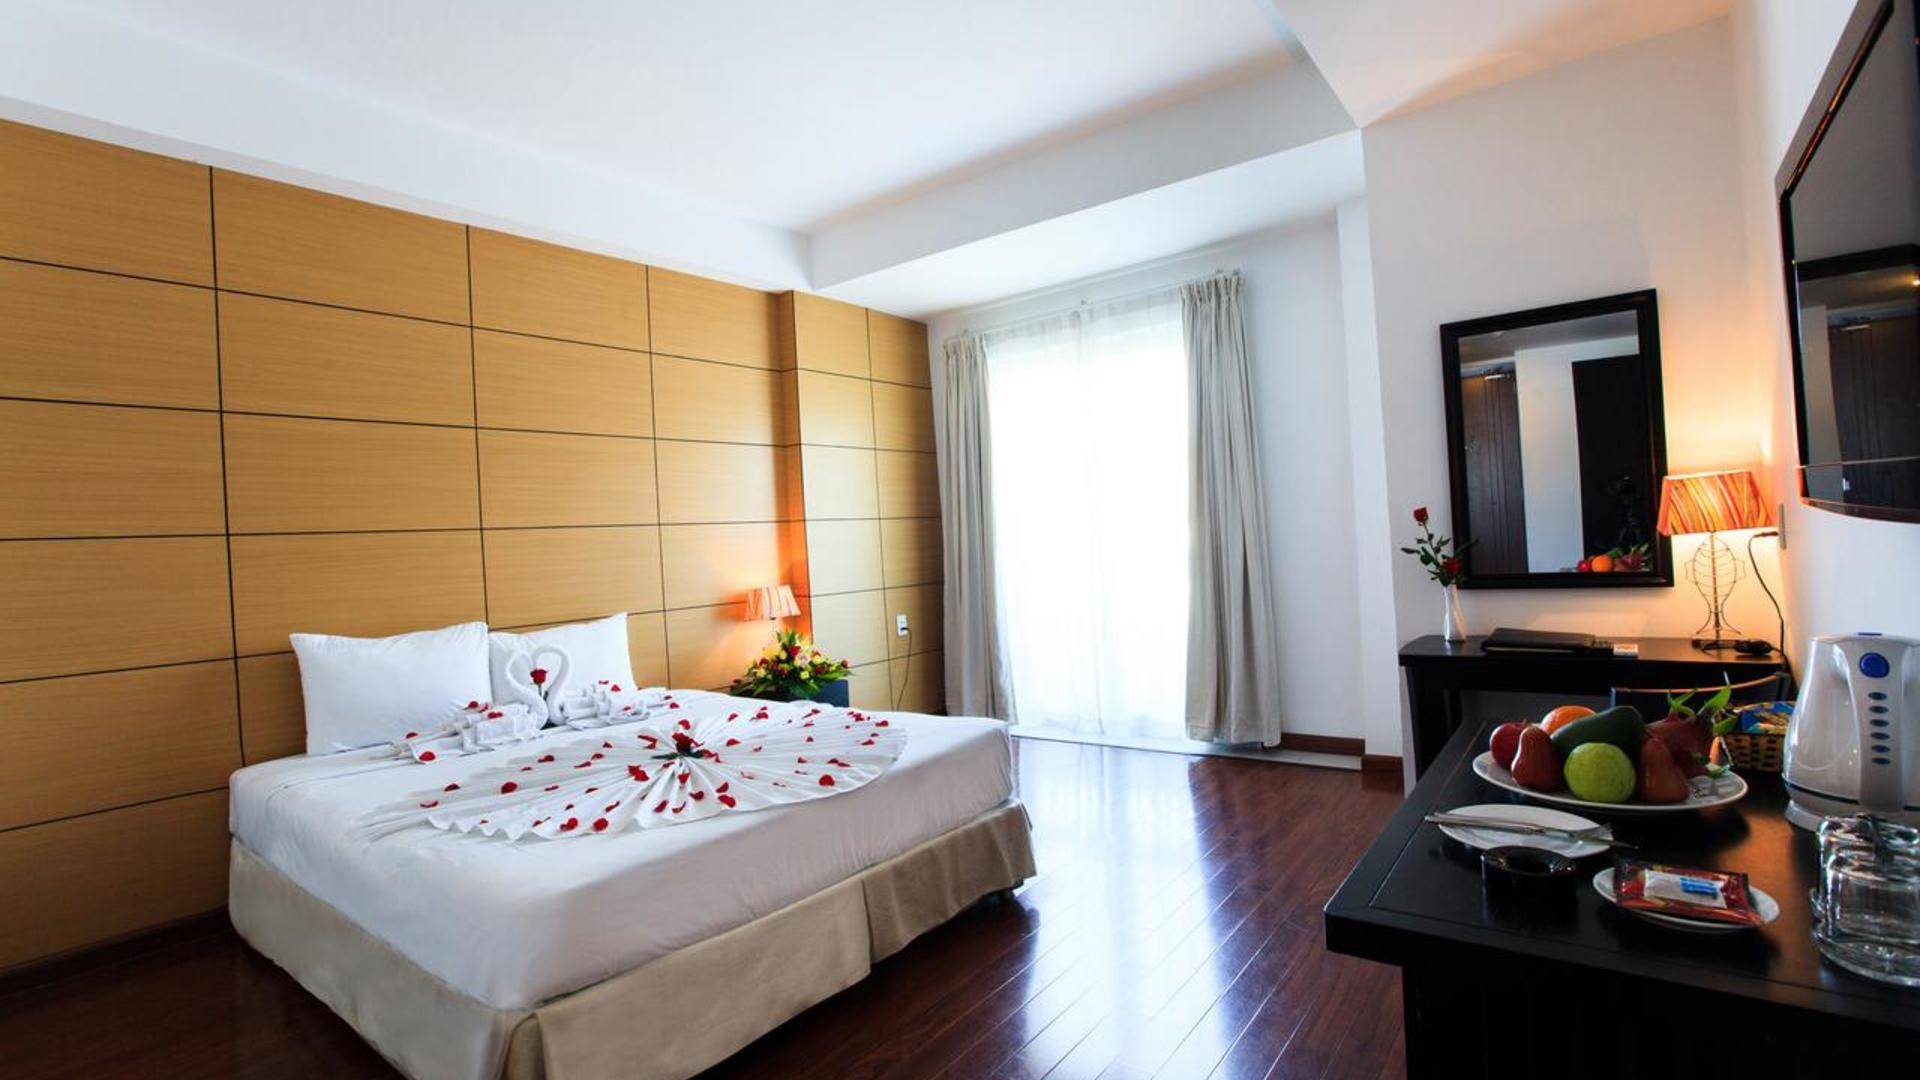 Отель paragon villa hotel 3*** (нячанг / вьетнам) - отзывы туристов о гостинице описание номеров с фото